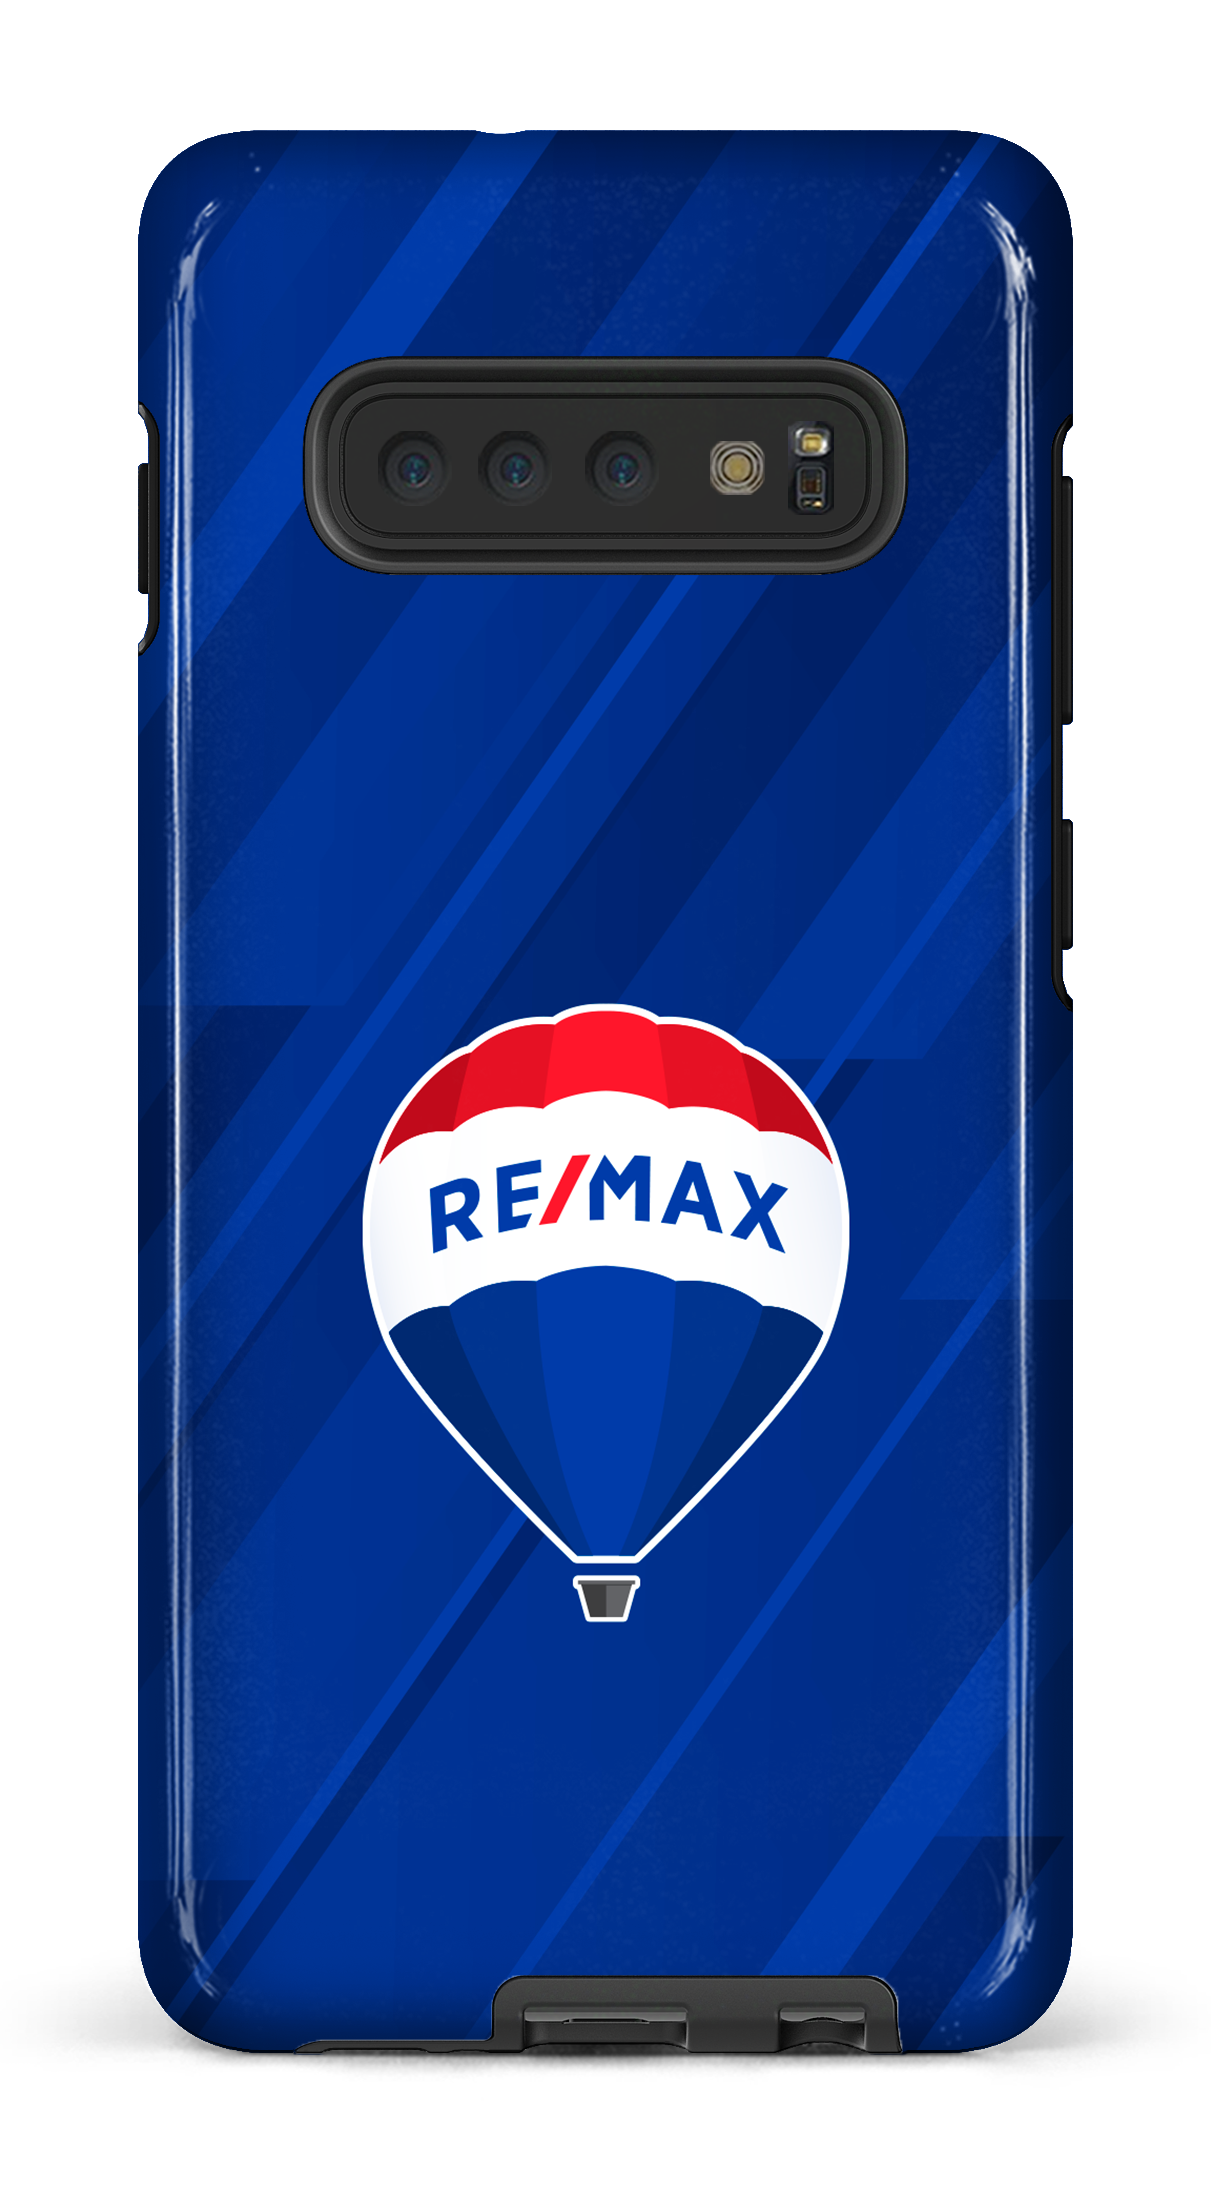 Remax Bleu - Galaxy S10 Plus